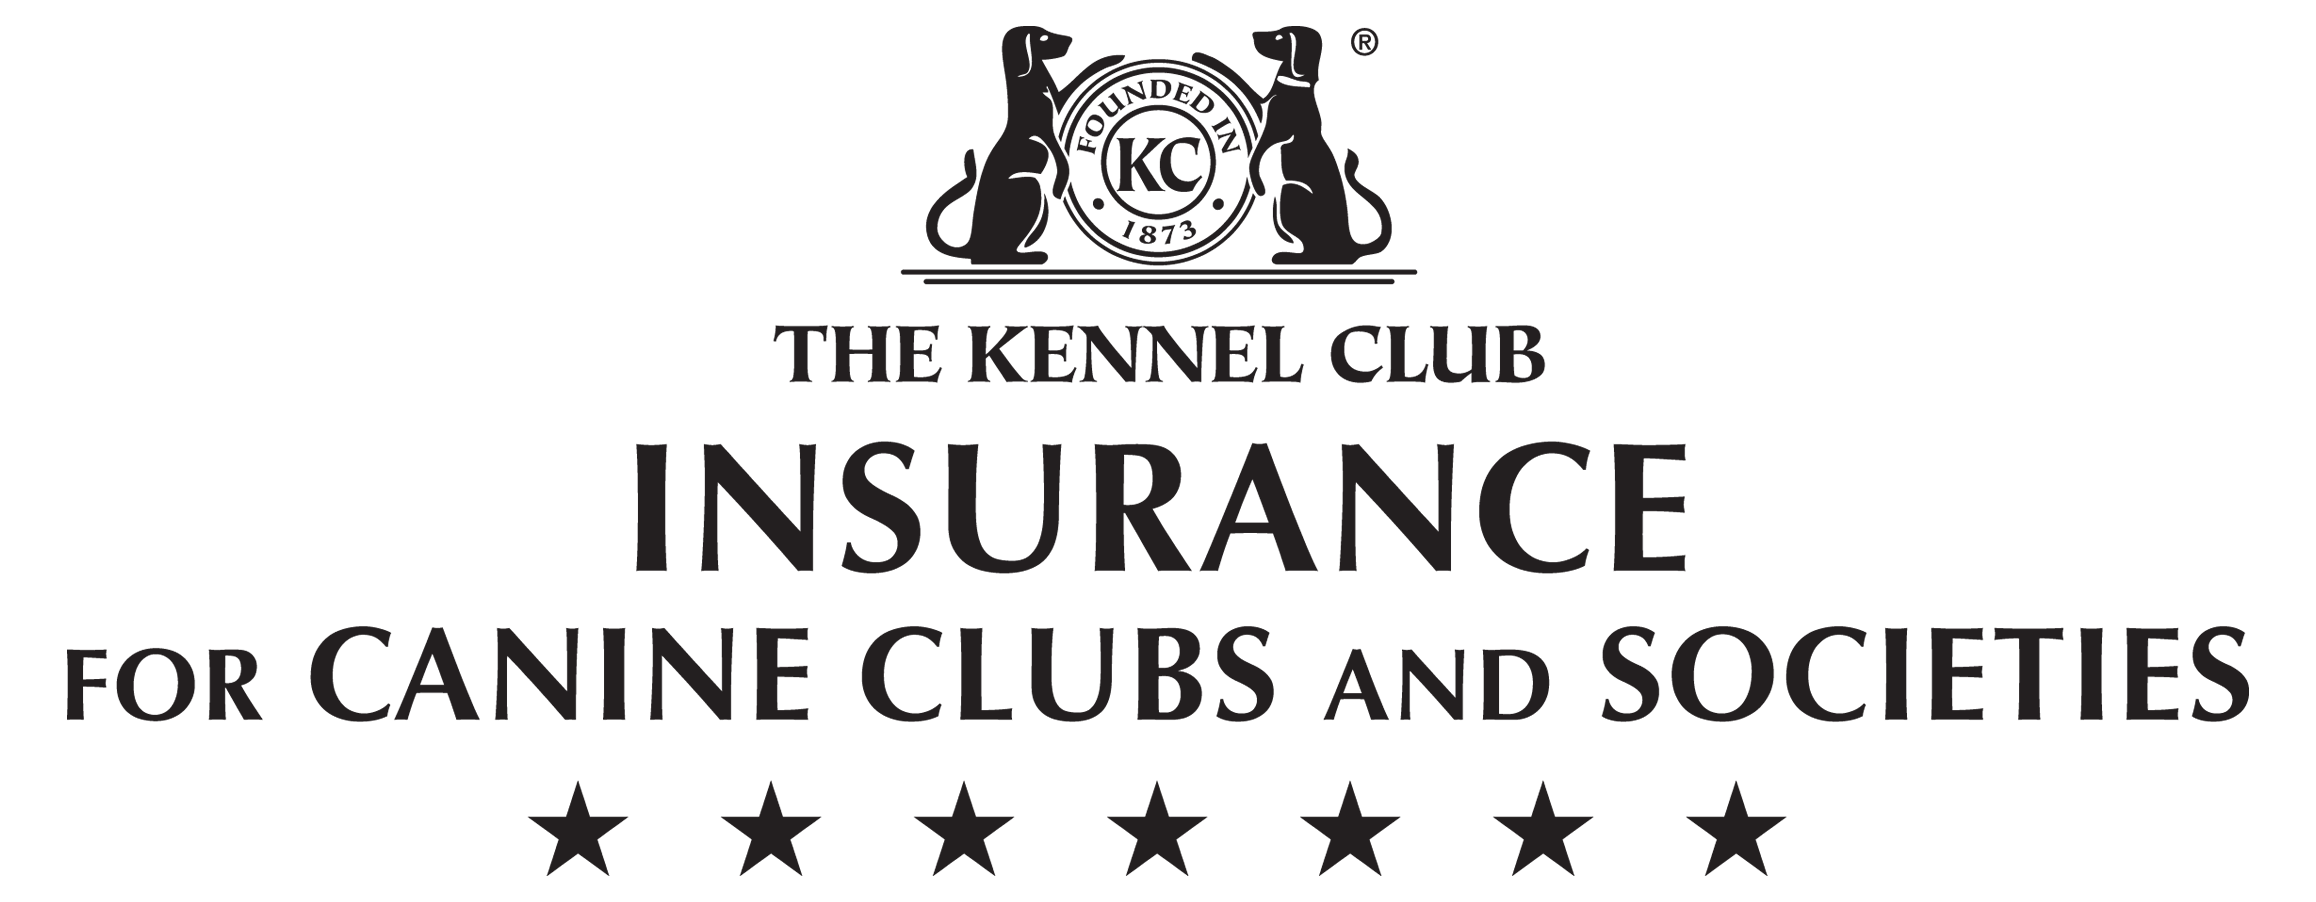 Kennel Club Insurance